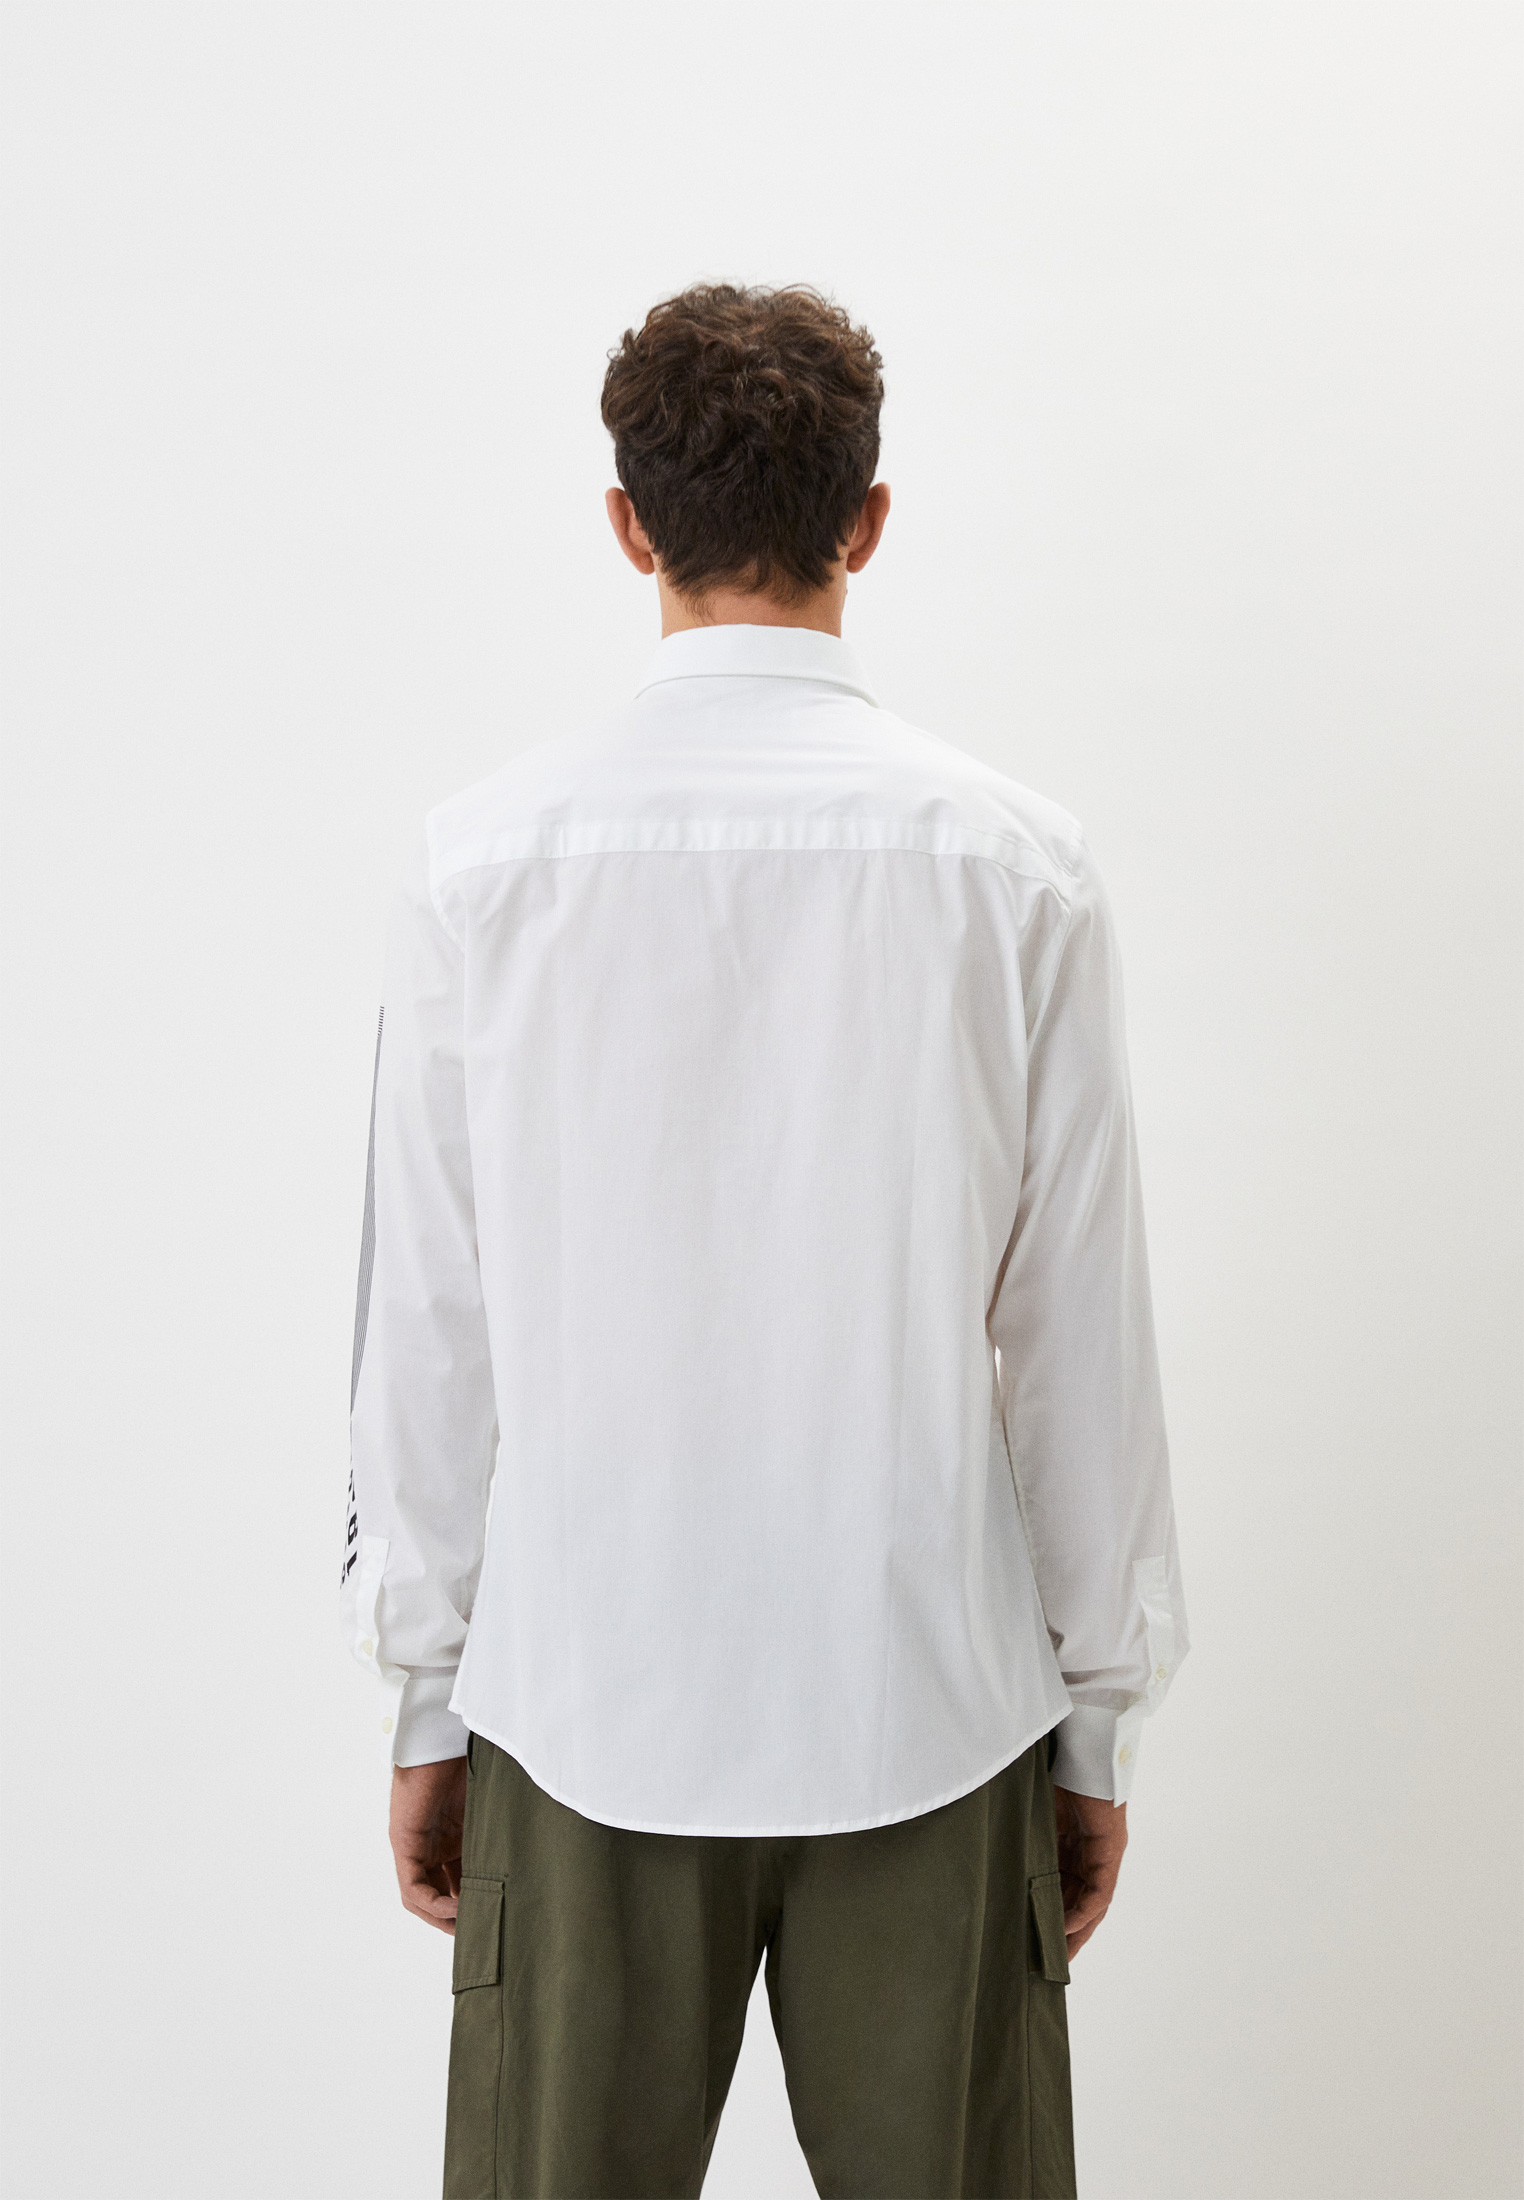 Рубашка с длинным рукавом Bikkembergs (Биккембергс) C C 095 03 S 2931: изображение 3